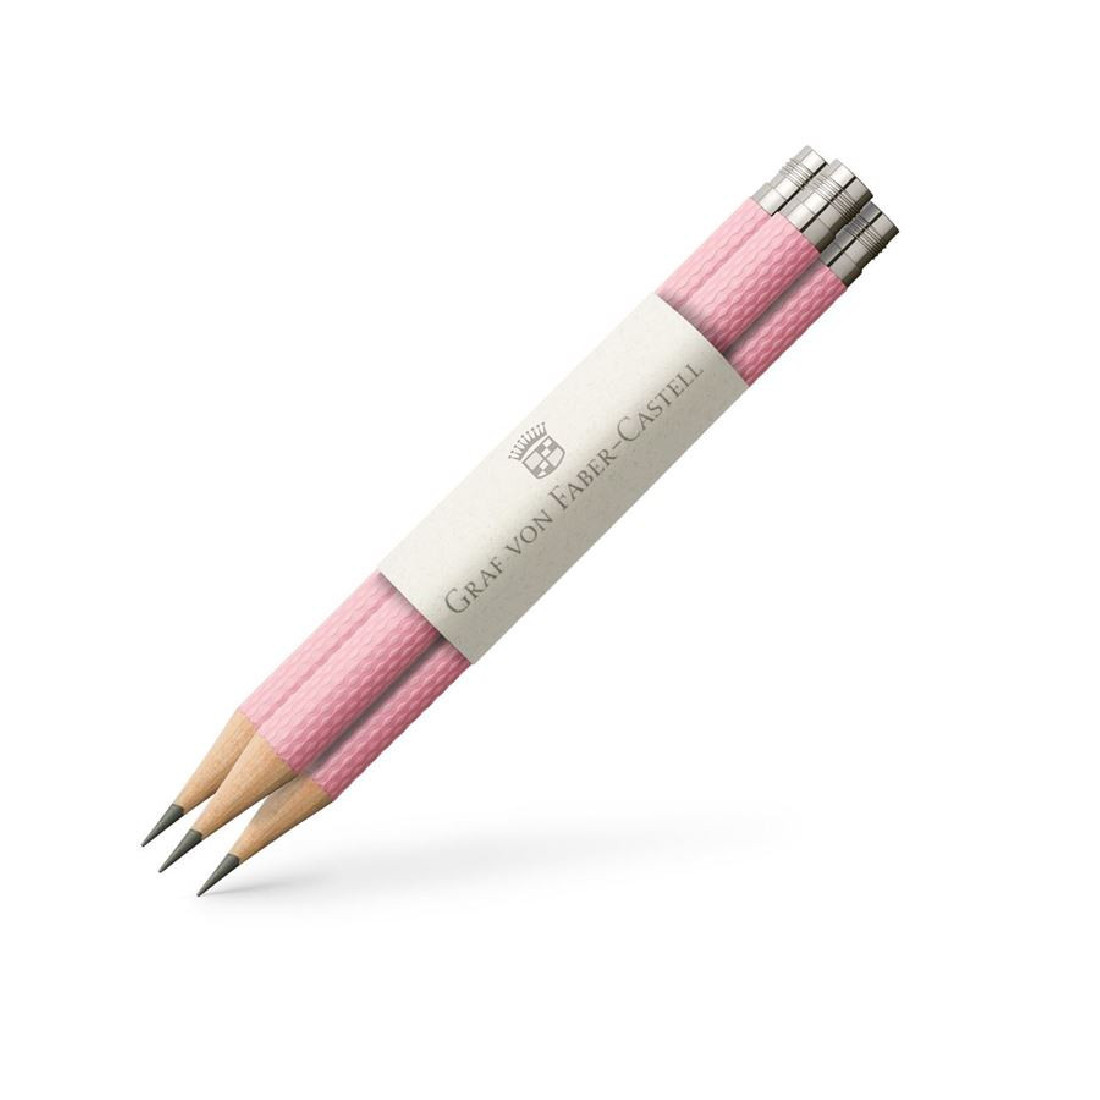 3 pocket pencils Yozakura, Pink 118634 Graf Von Faber Castell